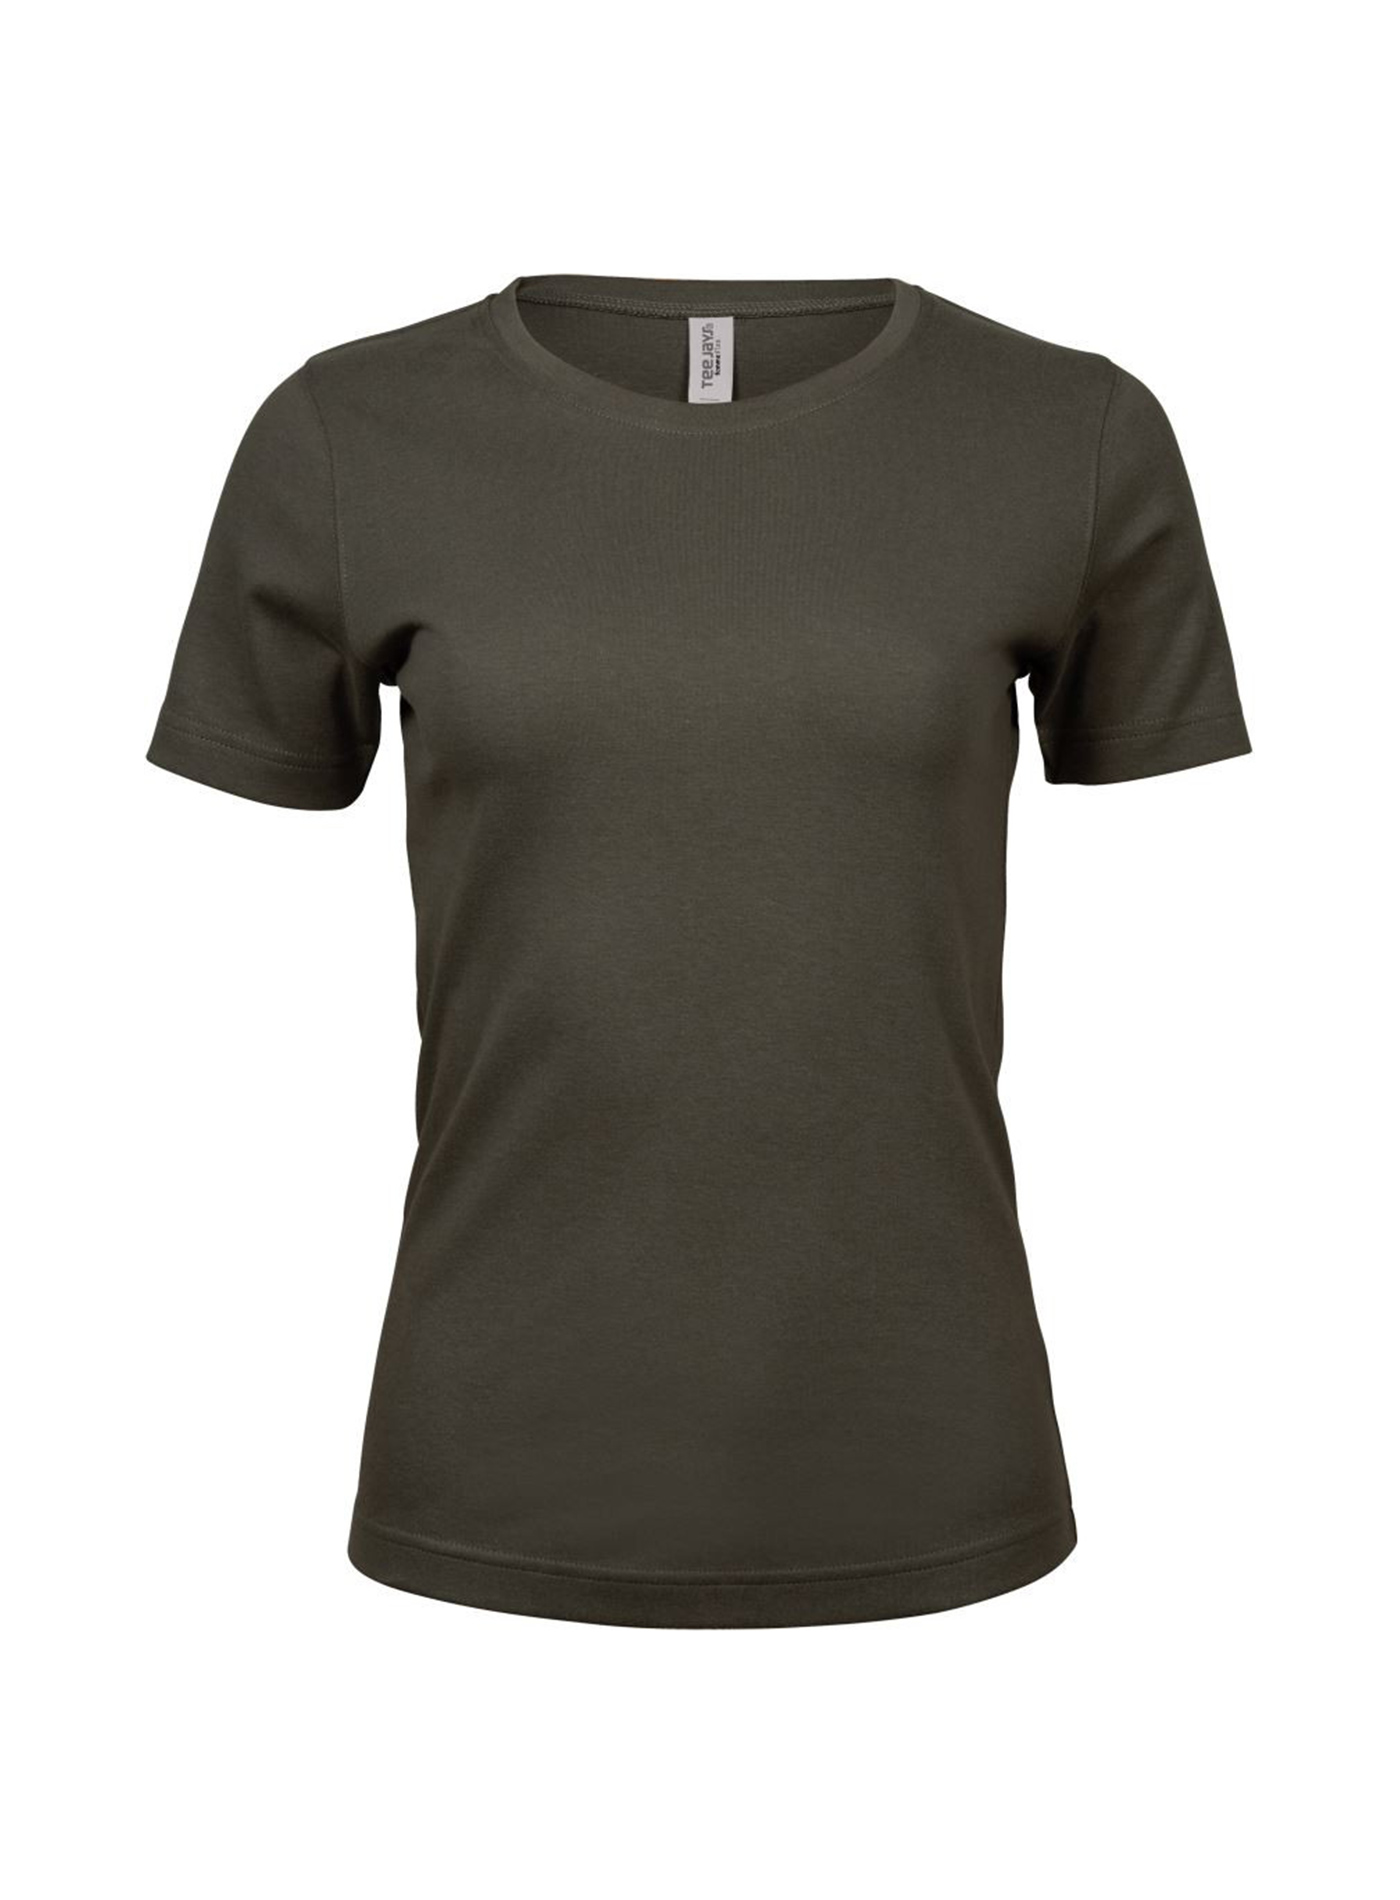 Silné bavlněné tričko Tee Jays Interlock - Tmavě olivová M